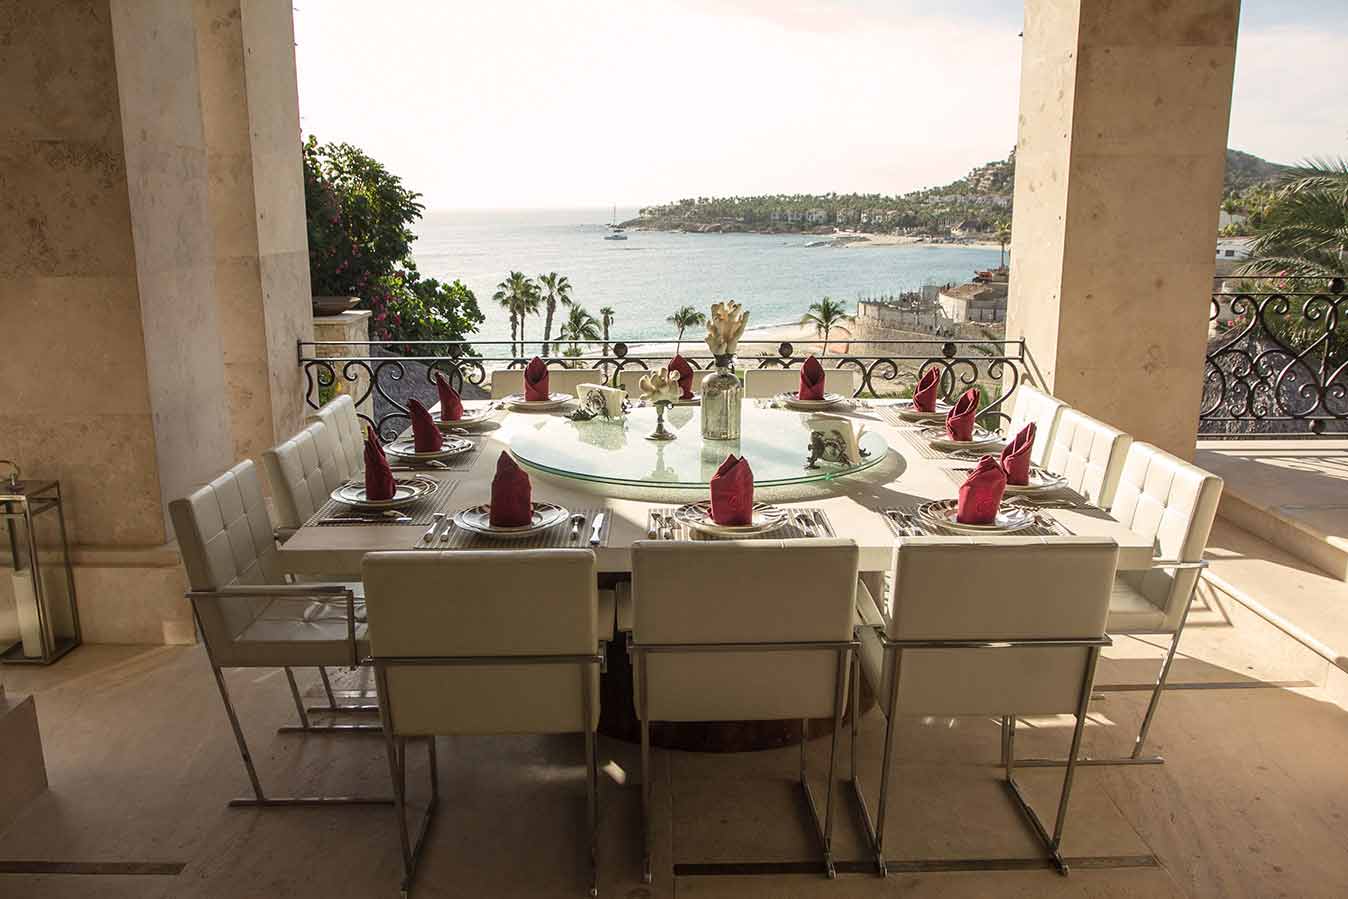 Outdoor Dining Room Table at Brisas Del Mar